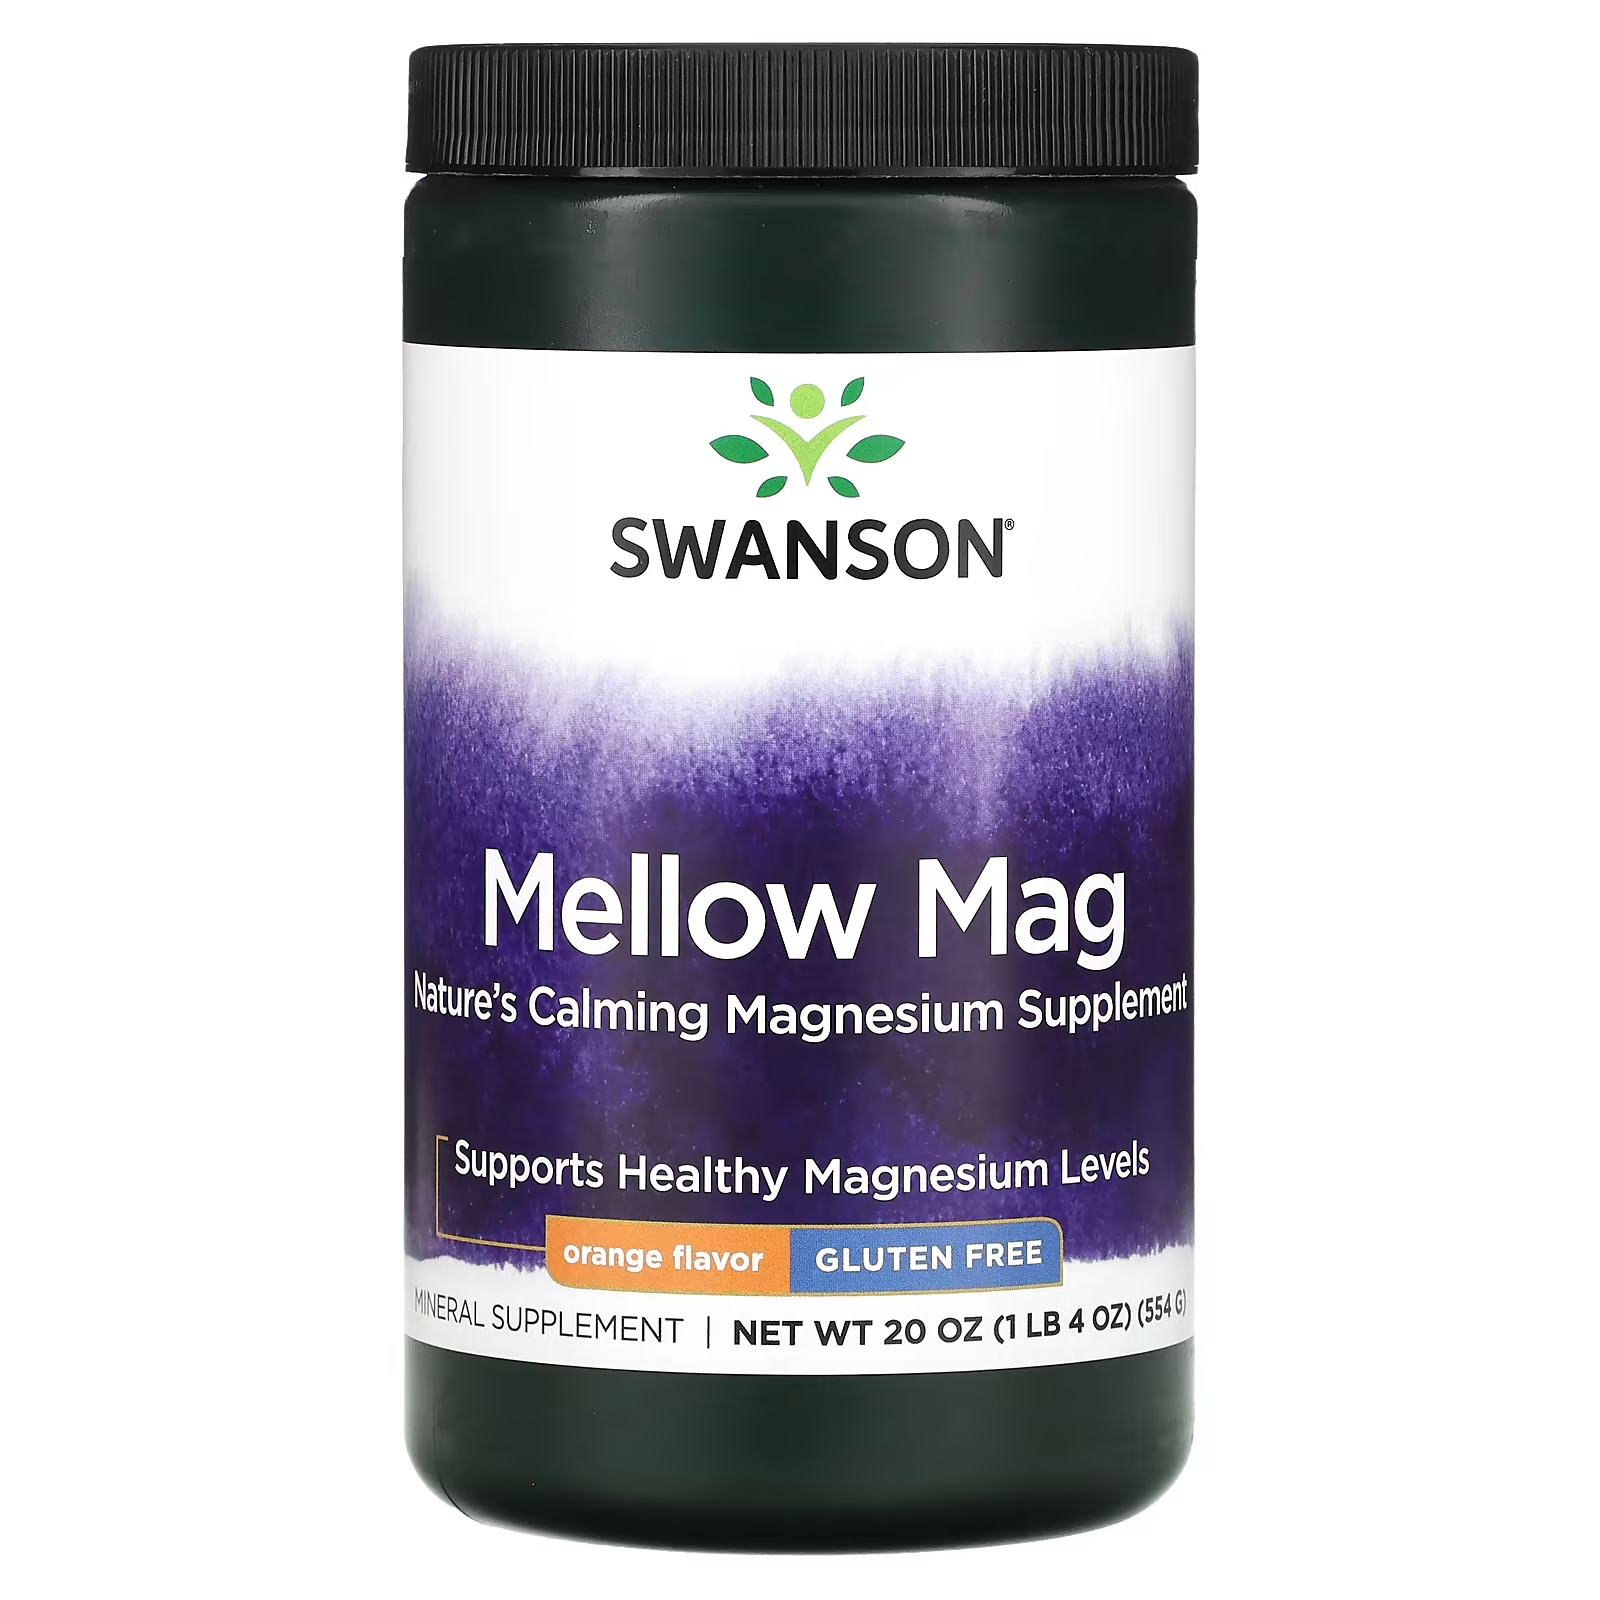 Пищевая добавка Swanson Mellow Mag со вкусом апельсина, 554 г пищевая добавка childlife essentials жидкий кальций с магнием со вкусом апельсина 473 мл